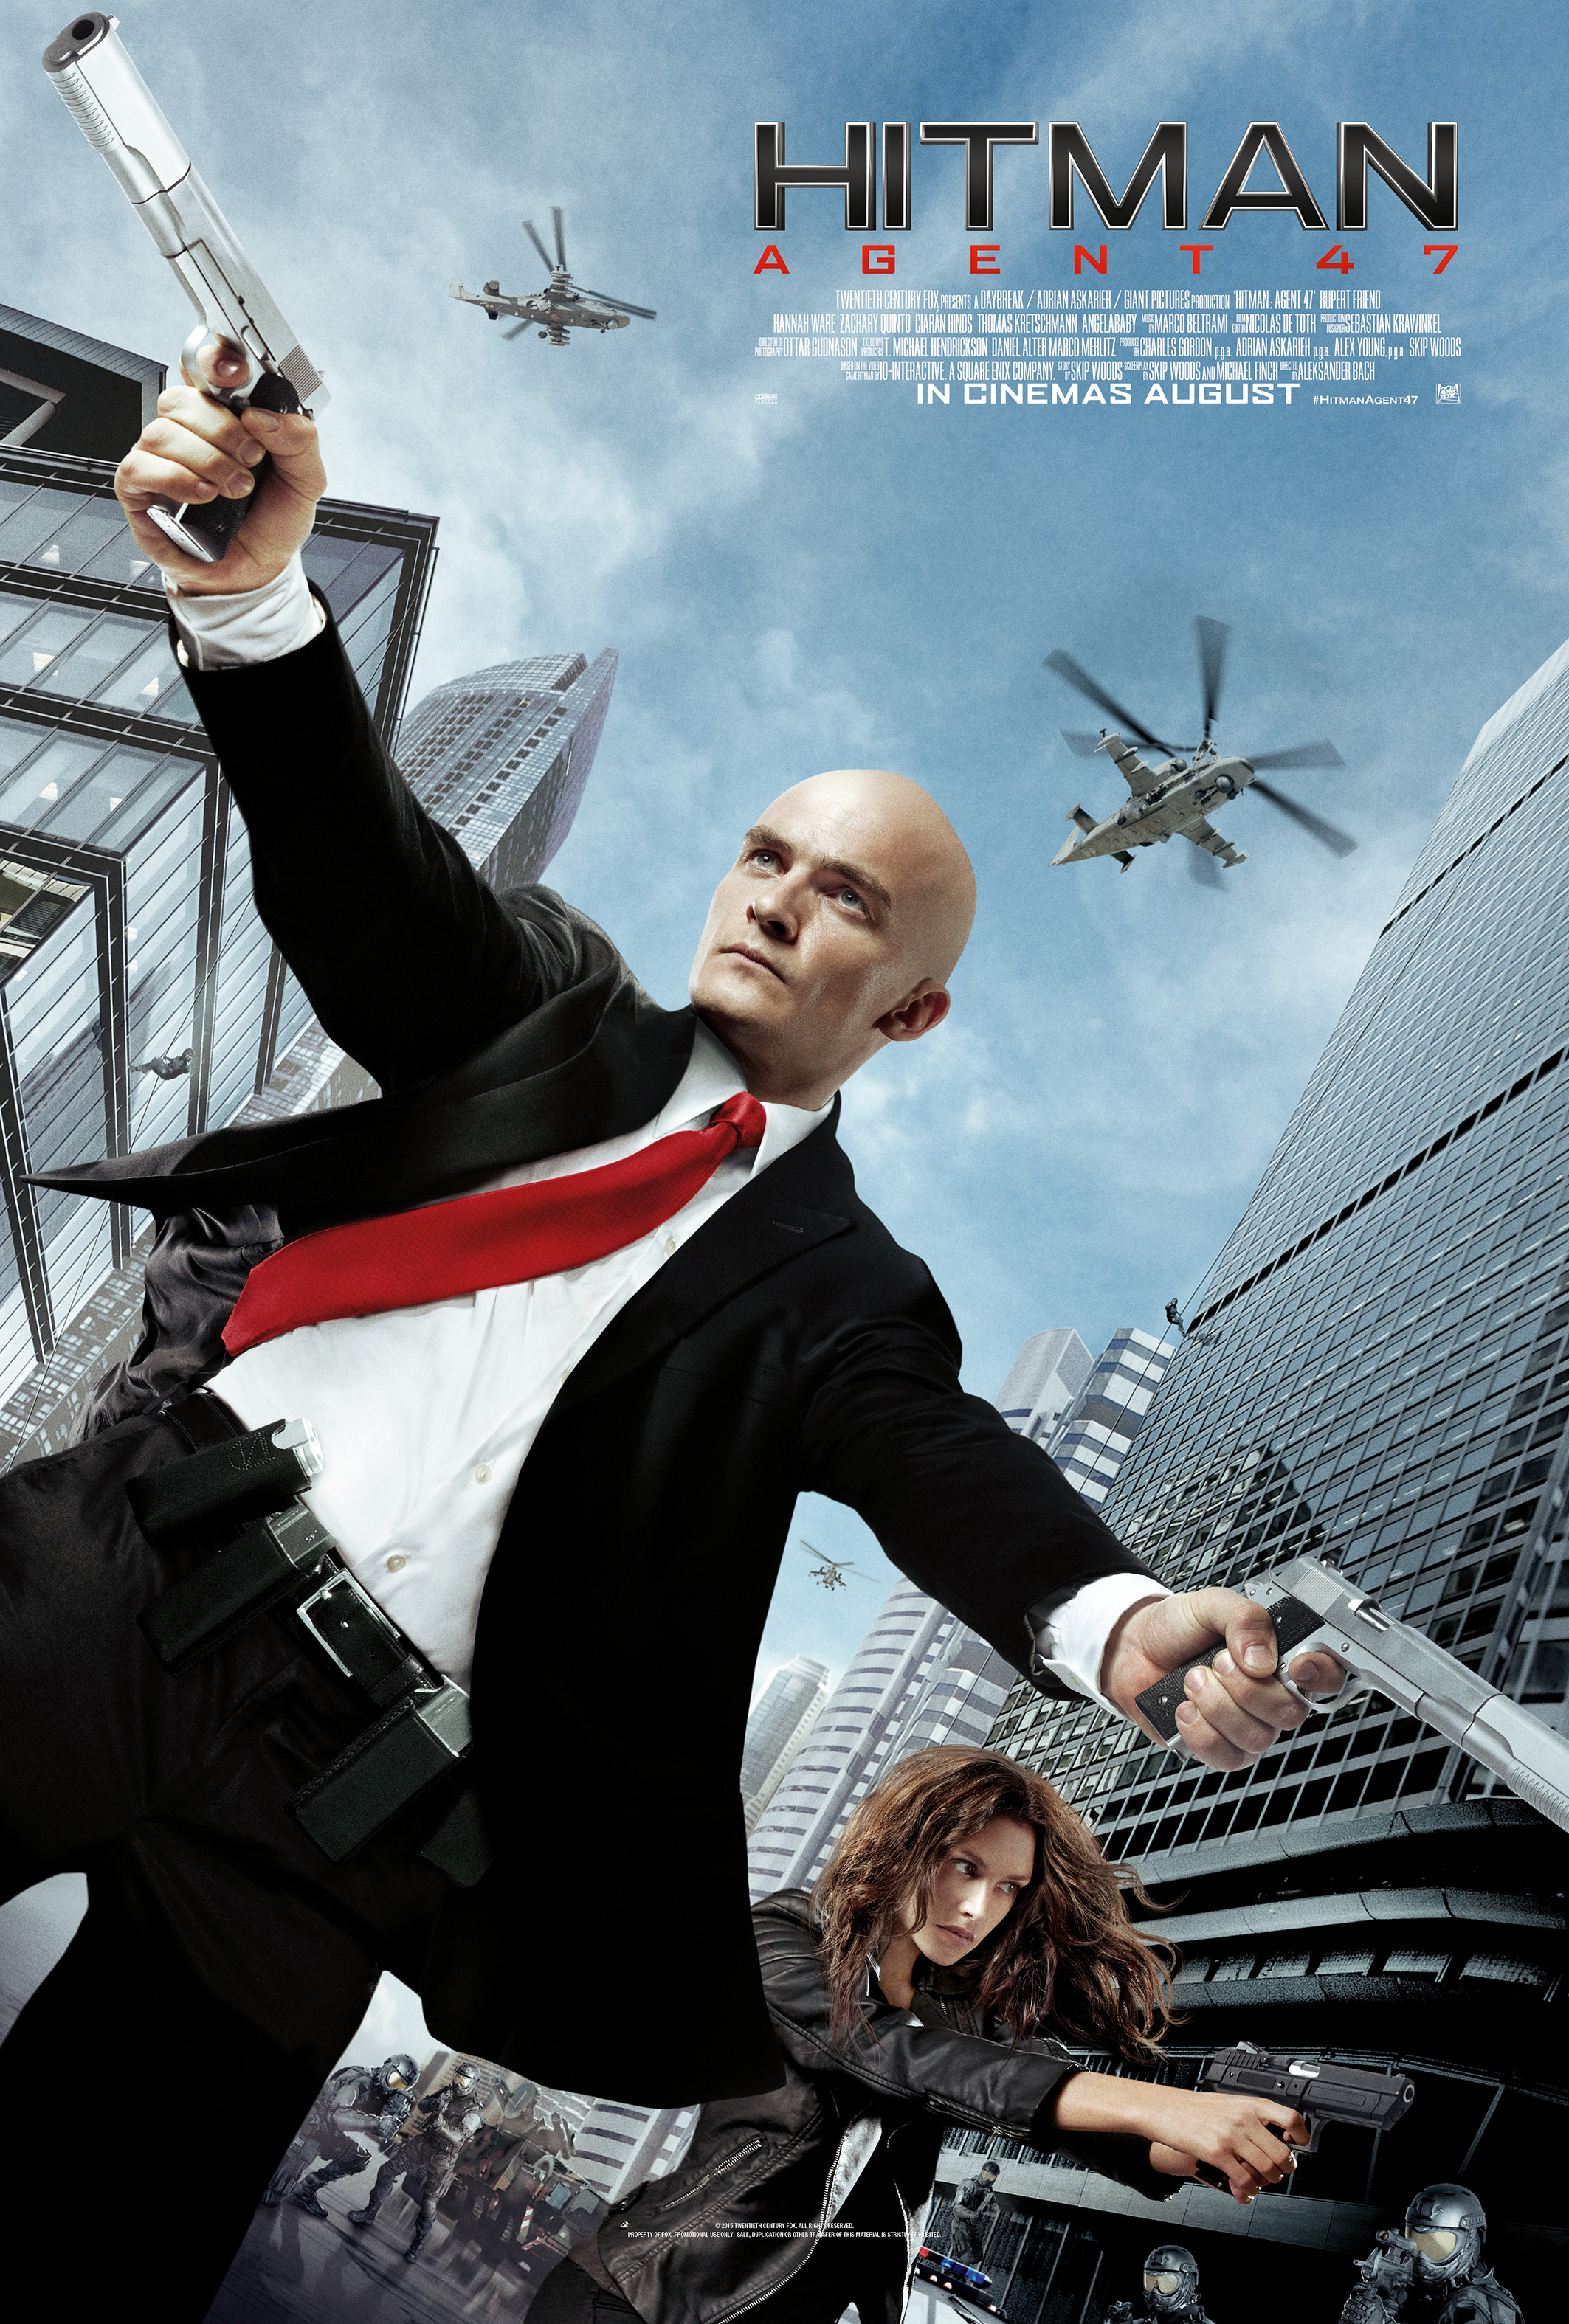   Above: &nbsp;Hitman: Agent 47 (2015) poster.&nbsp; Below: &nbsp;Hitman (2007) poster. 